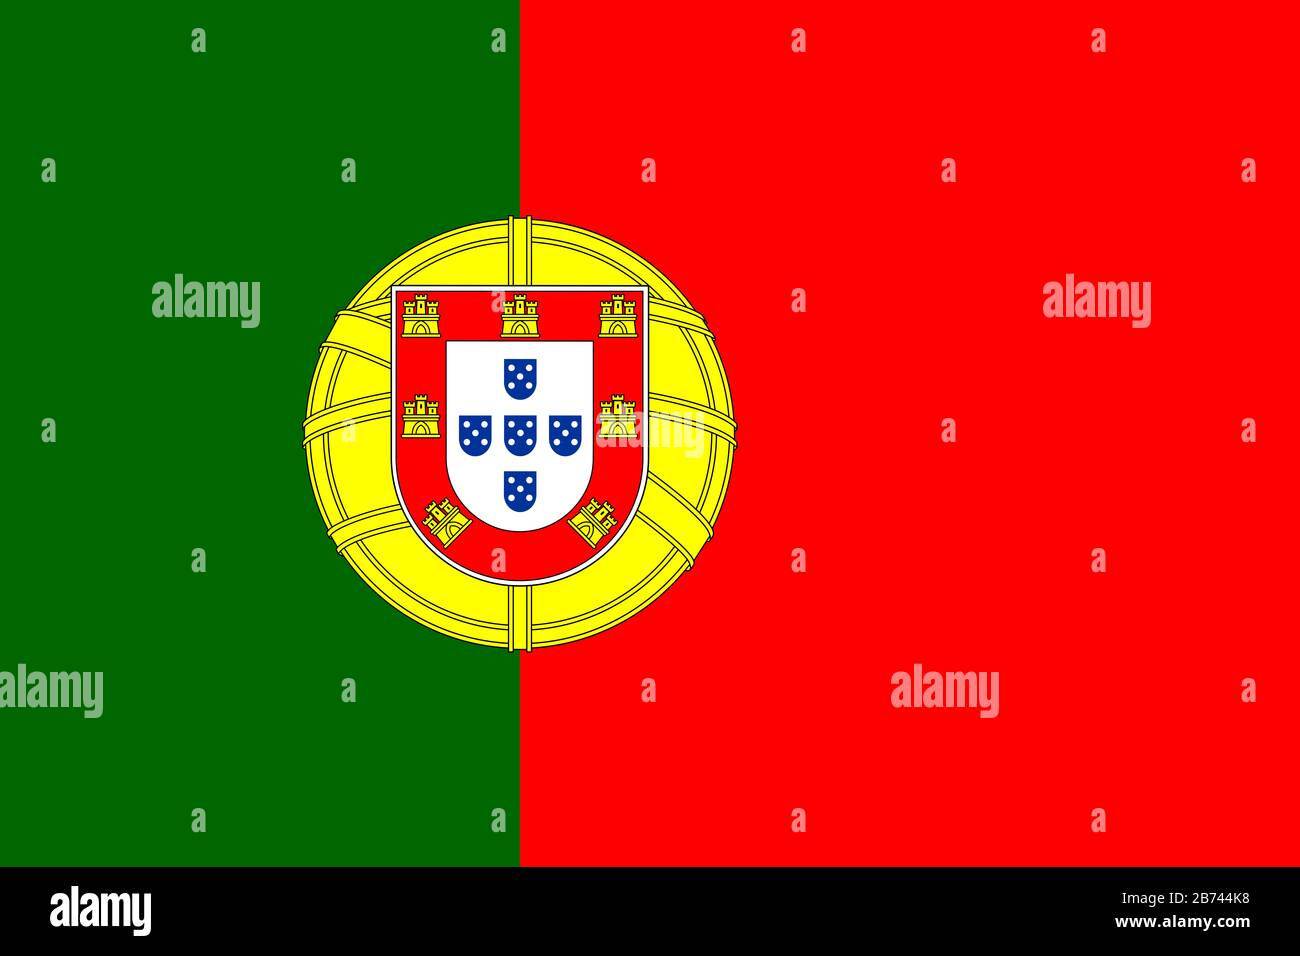 Drapeau du Portugal - Rapport standard du drapeau portugais - mode couleur RVB réel Banque D'Images